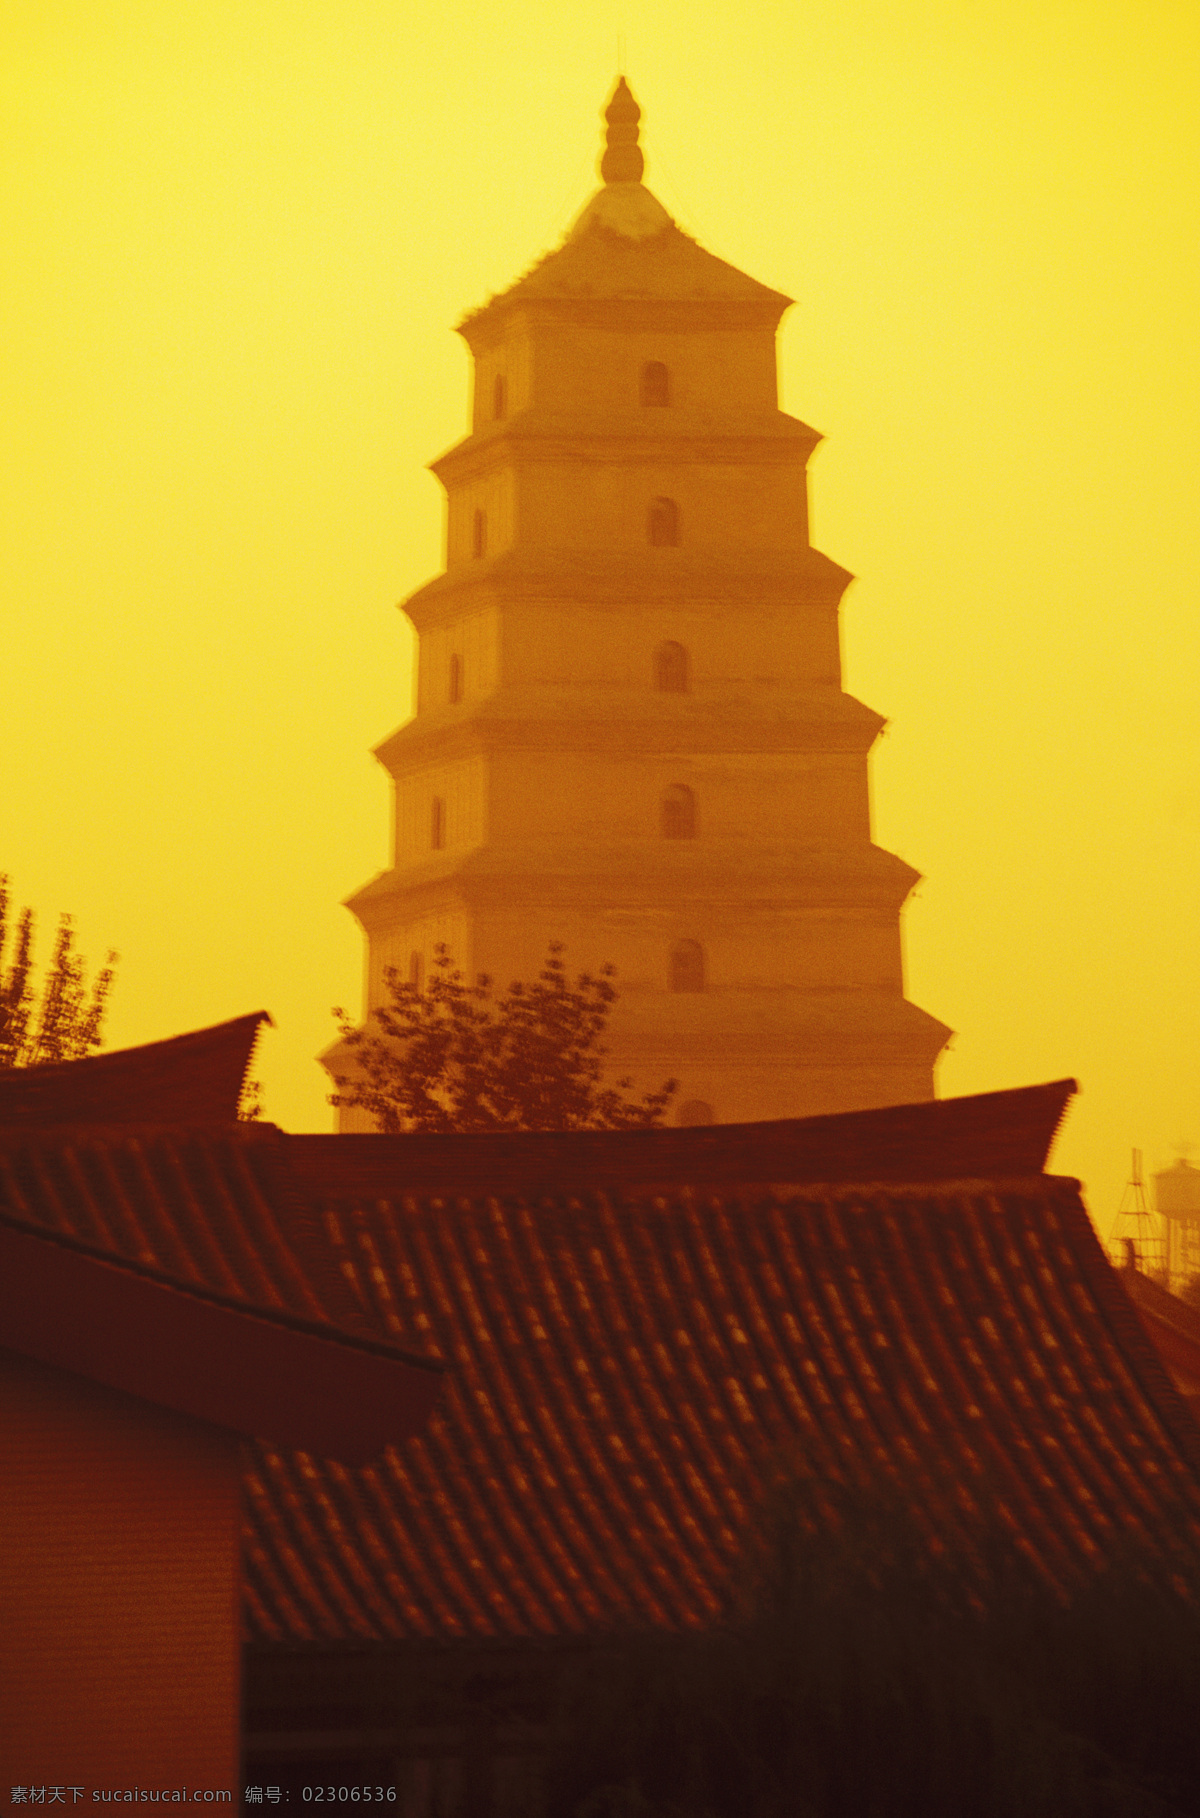 黄昏 中 宝塔 高清图片 横构图 彩色照片 中国 东亚 亚洲 旅游 旅行 塔 房屋 屋顶 天空 黄色 夕阳 古建筑 风景名胜 风景图片